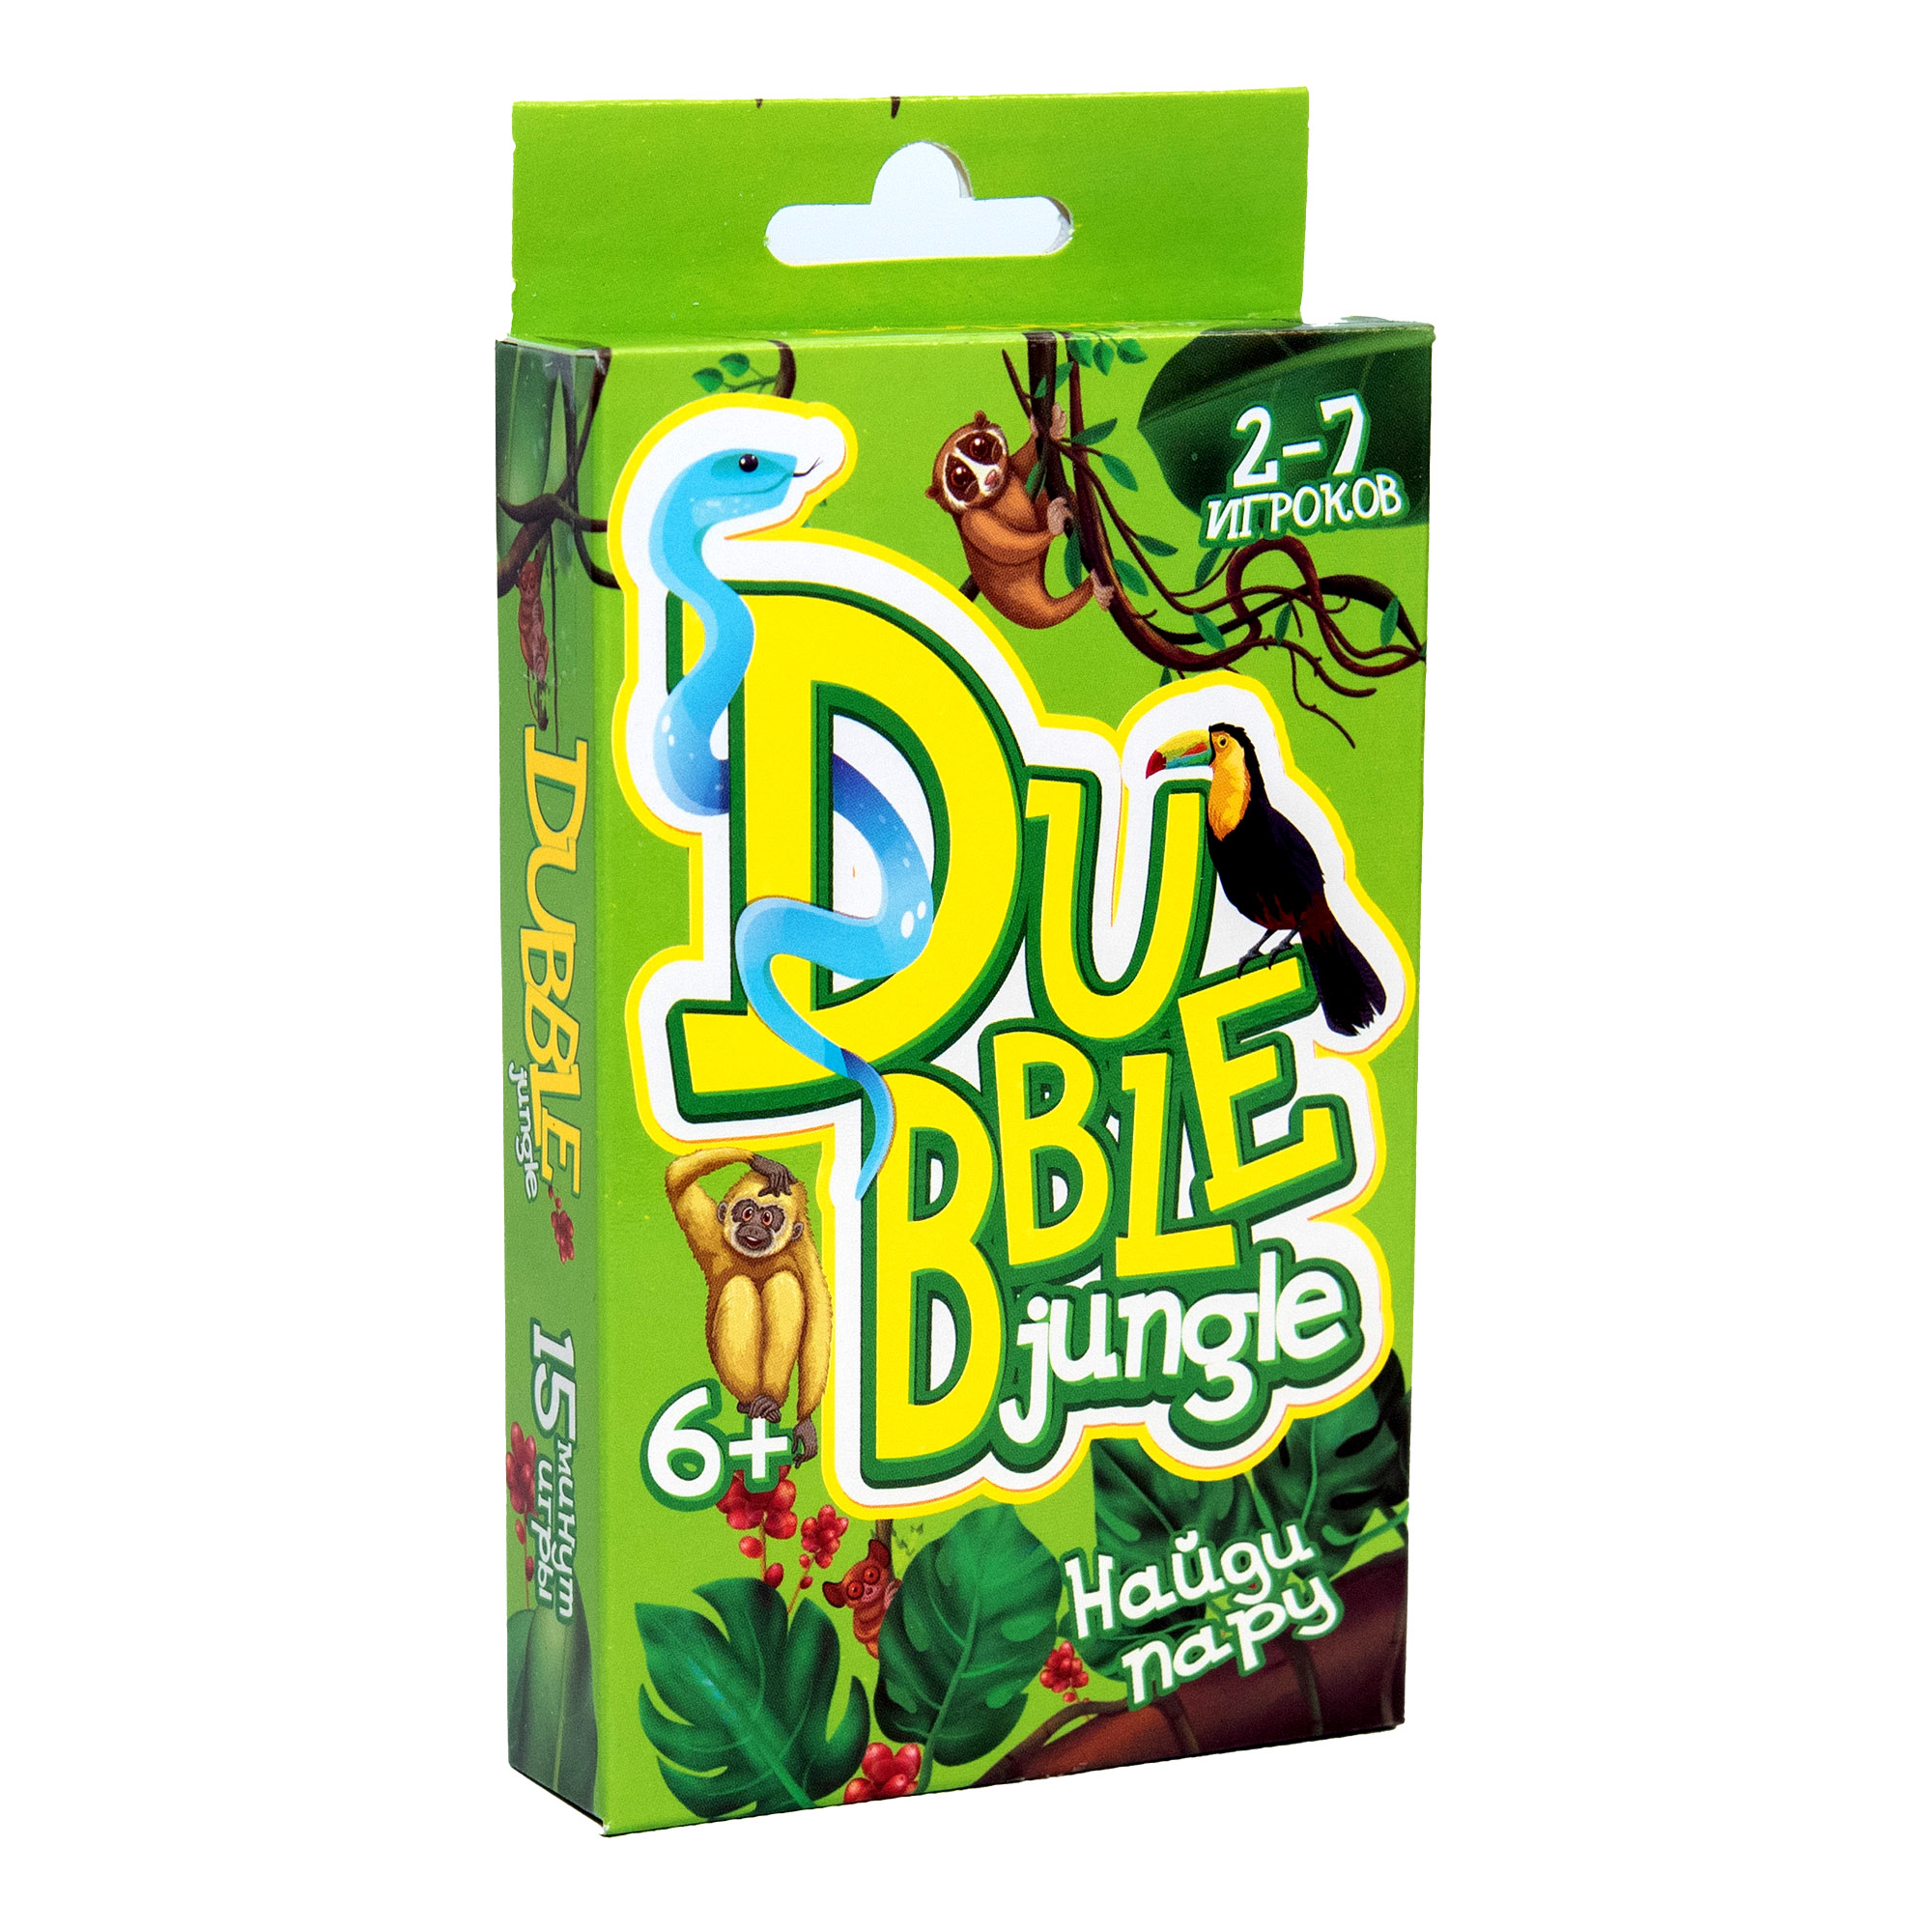 Board game "Dubble jungle" (rus) (30345)